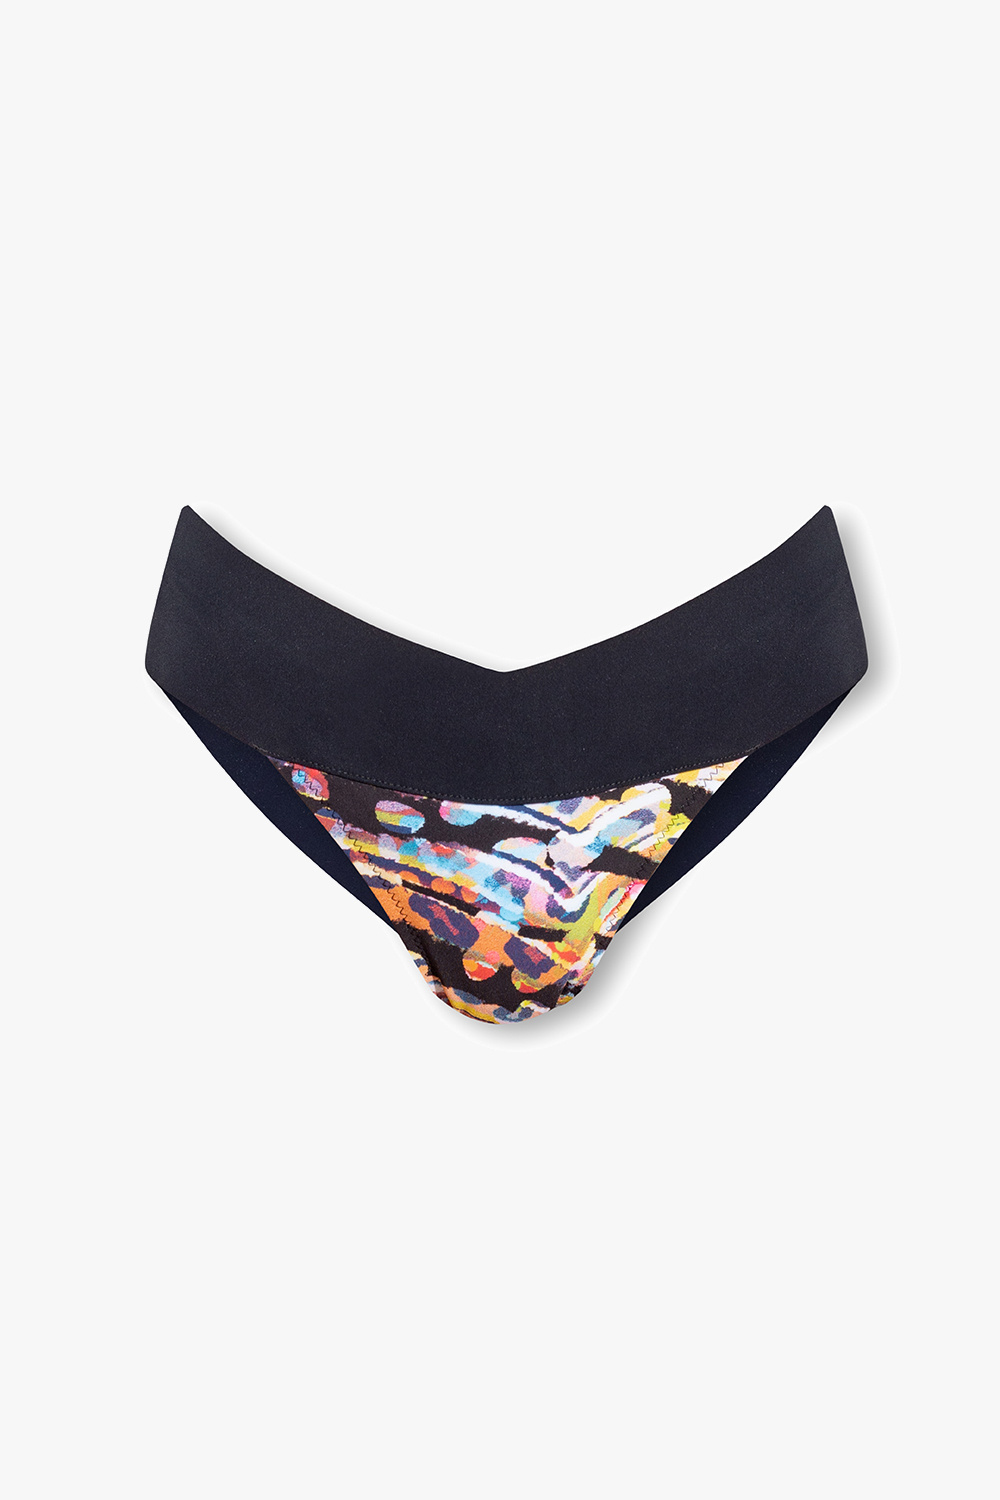 Pain de Sucre ‘Chacha’ swimsuit bottom